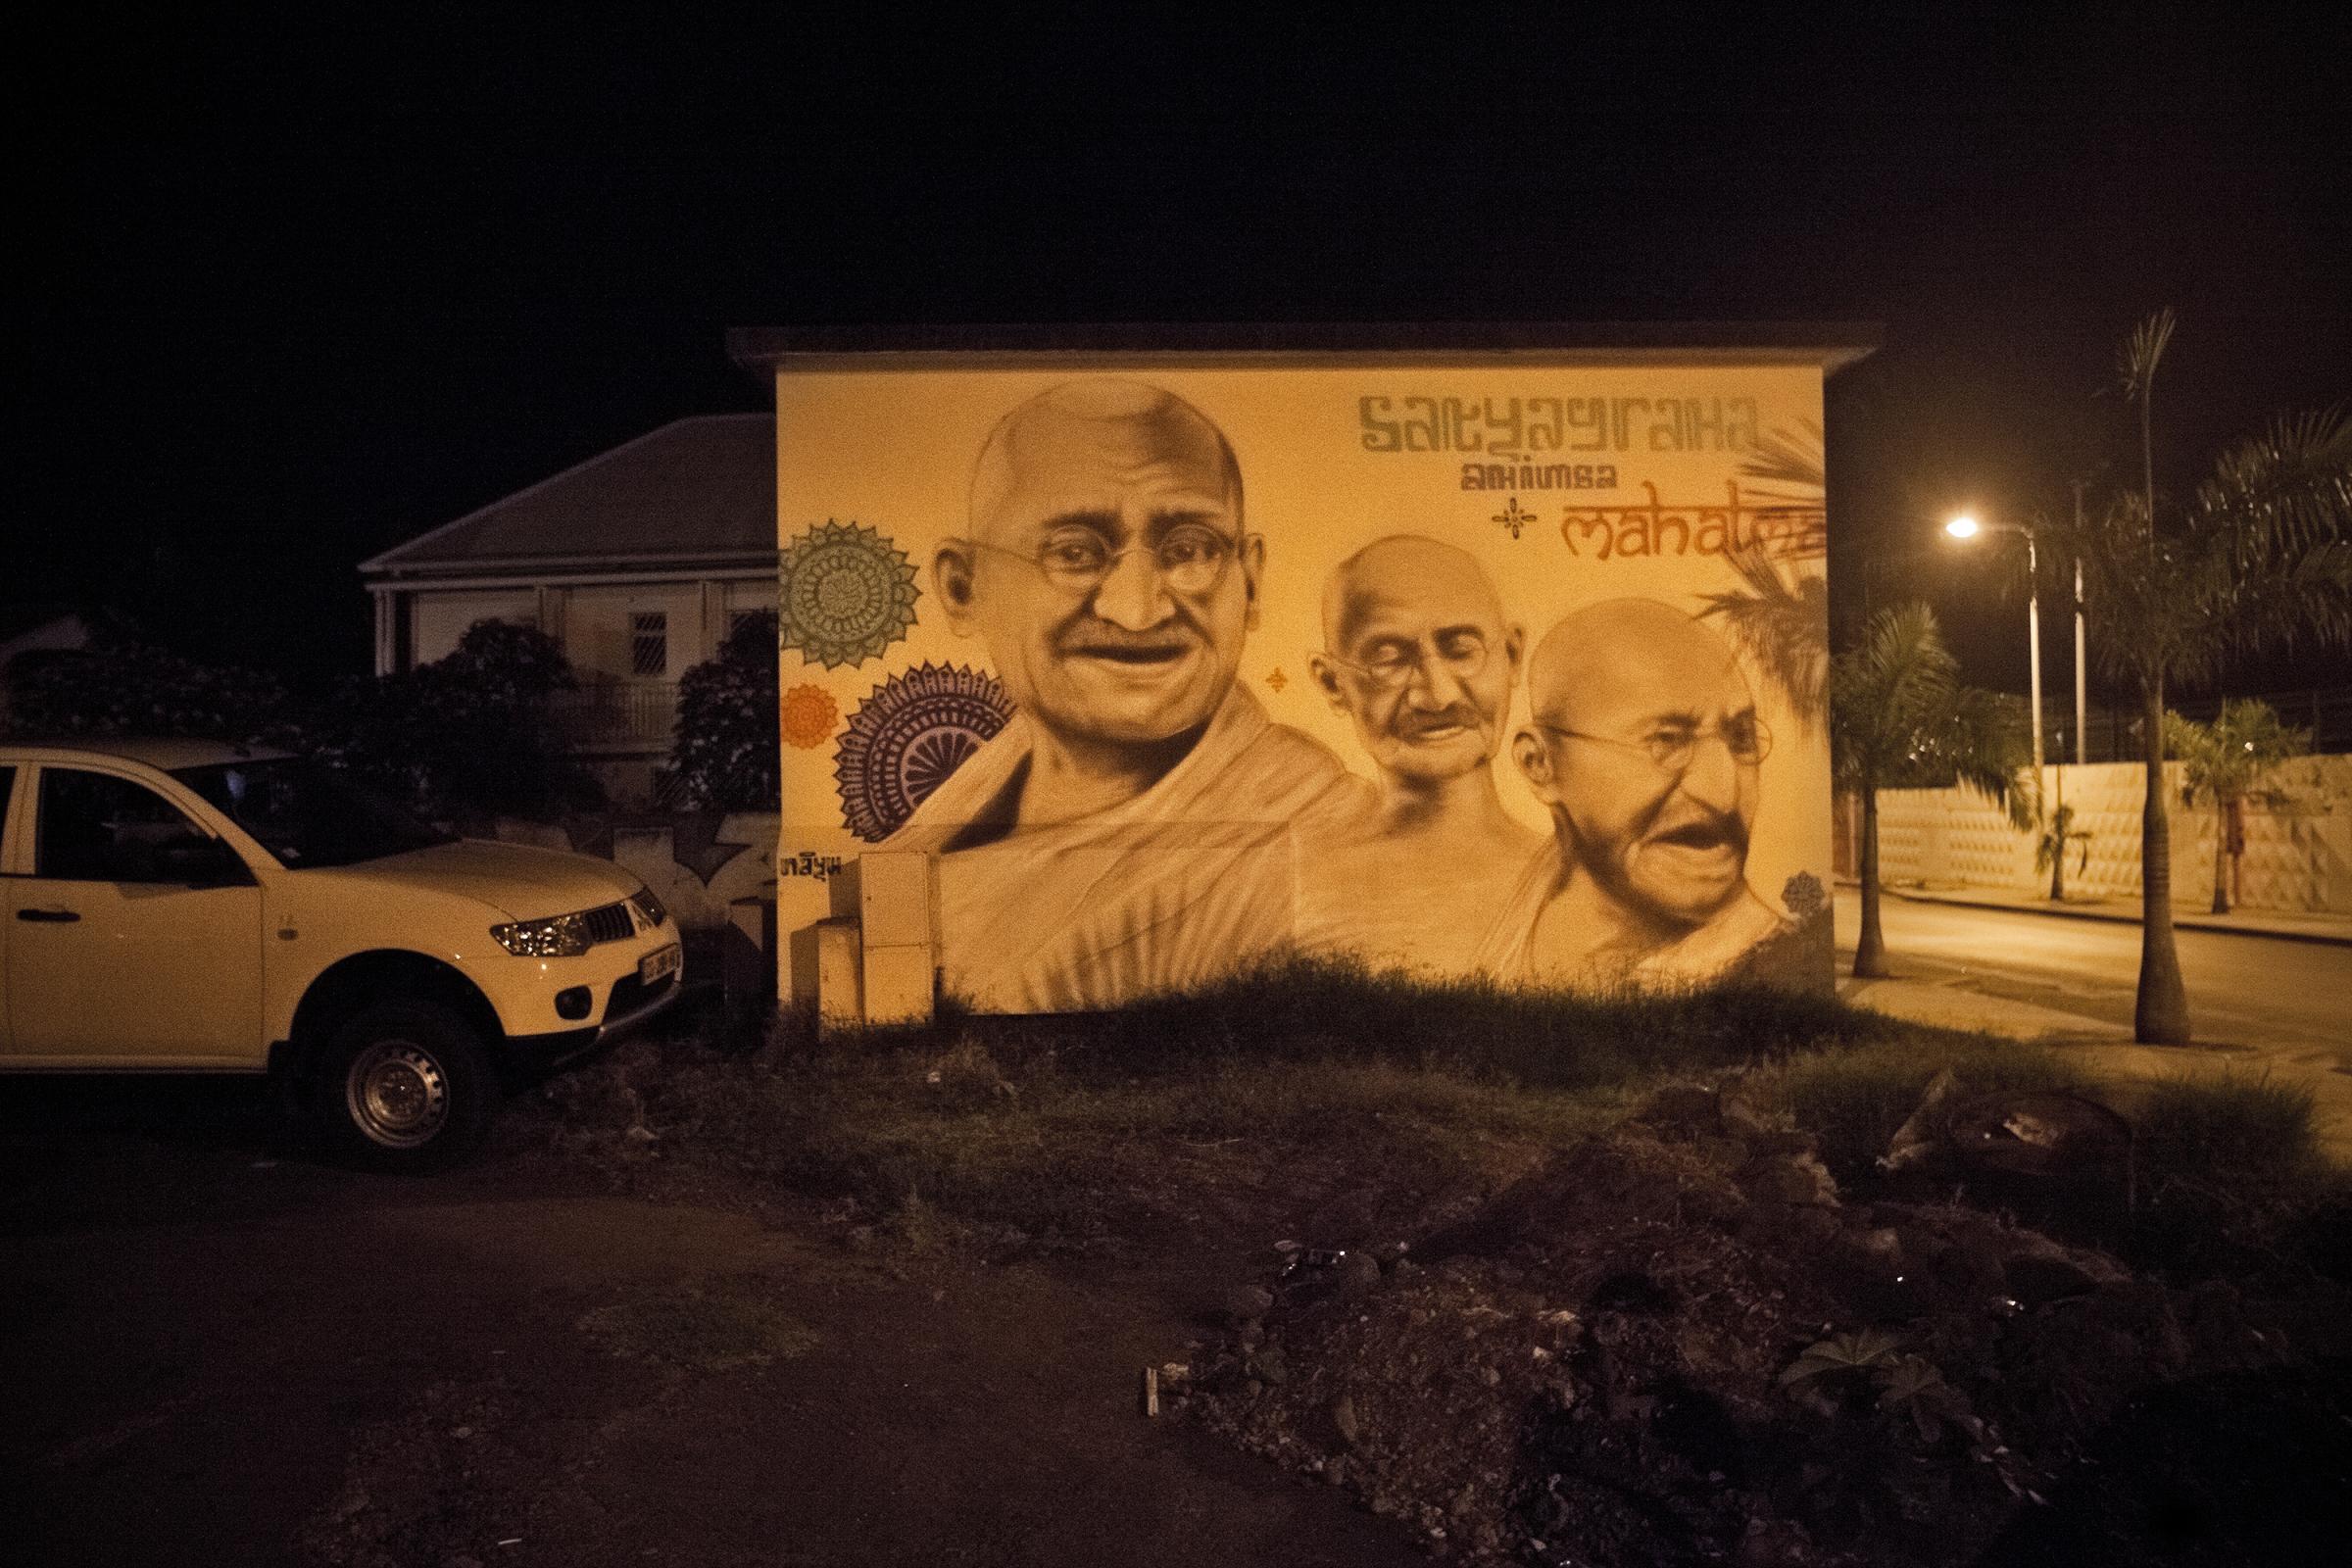 • De l'Inde à La Réunion, de l'Engagisme à la liberté (Ile de La Réunion) - Graffiti en hommage à Gandhi, Saint-Louis....